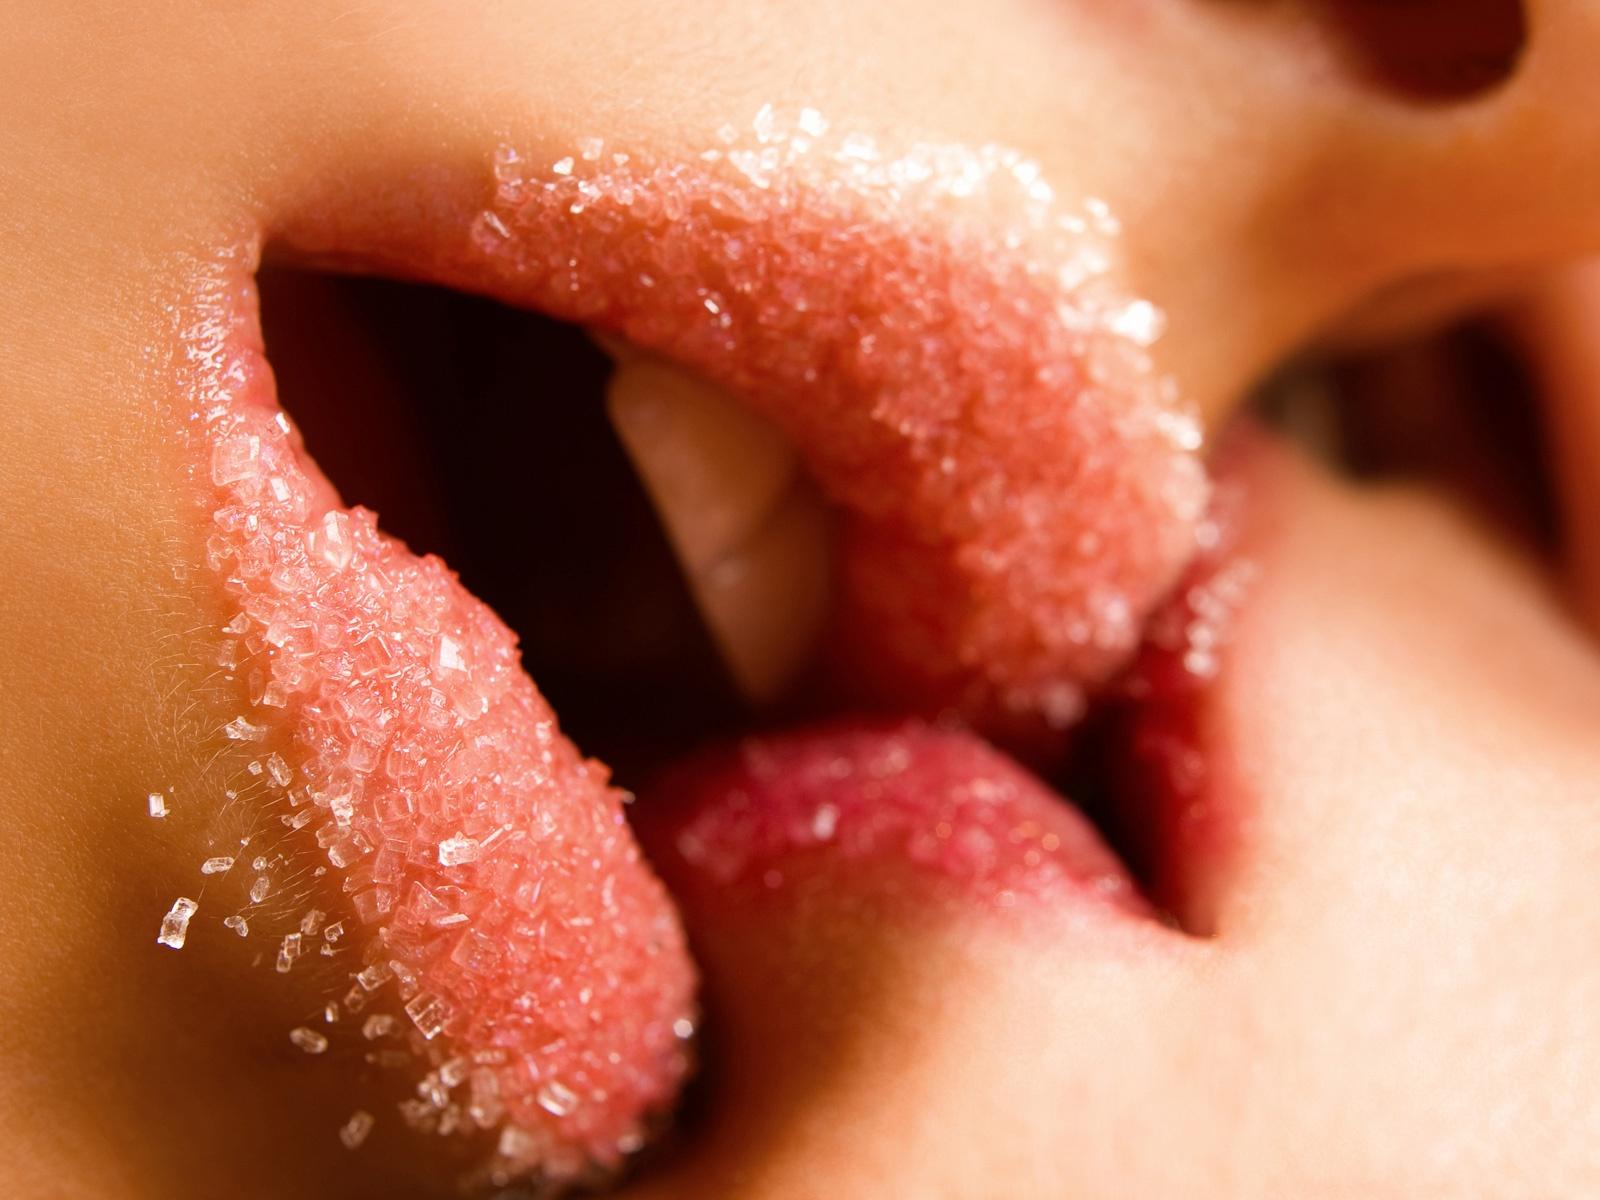 women kissing sugar lips